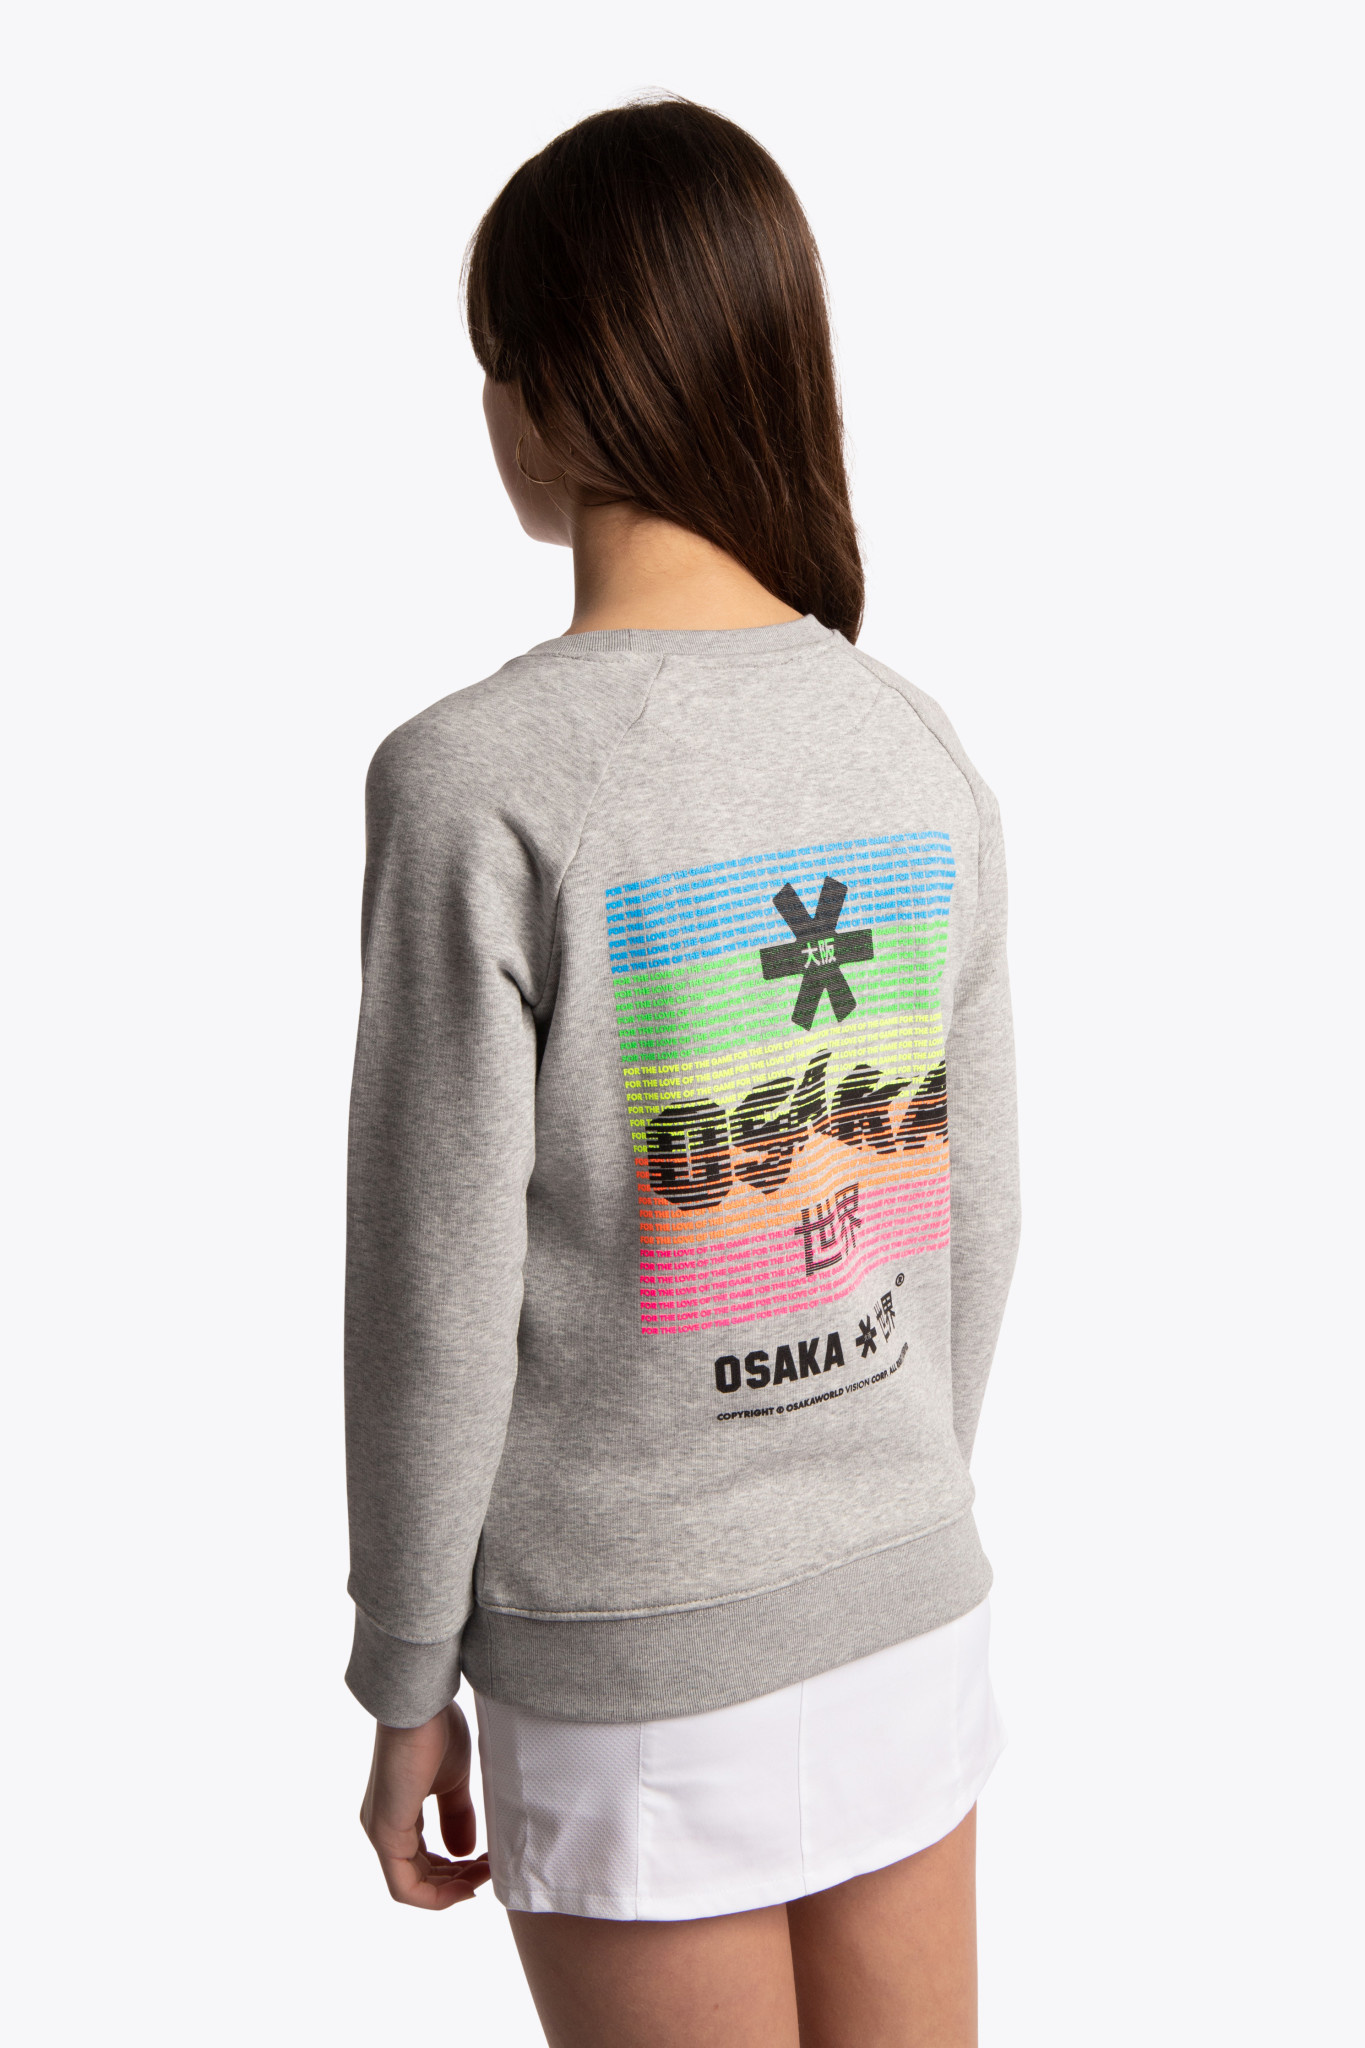 lavendel Groen Verschuiving Osaka sweater junior Warpy grijs - Hockeybrouwerij